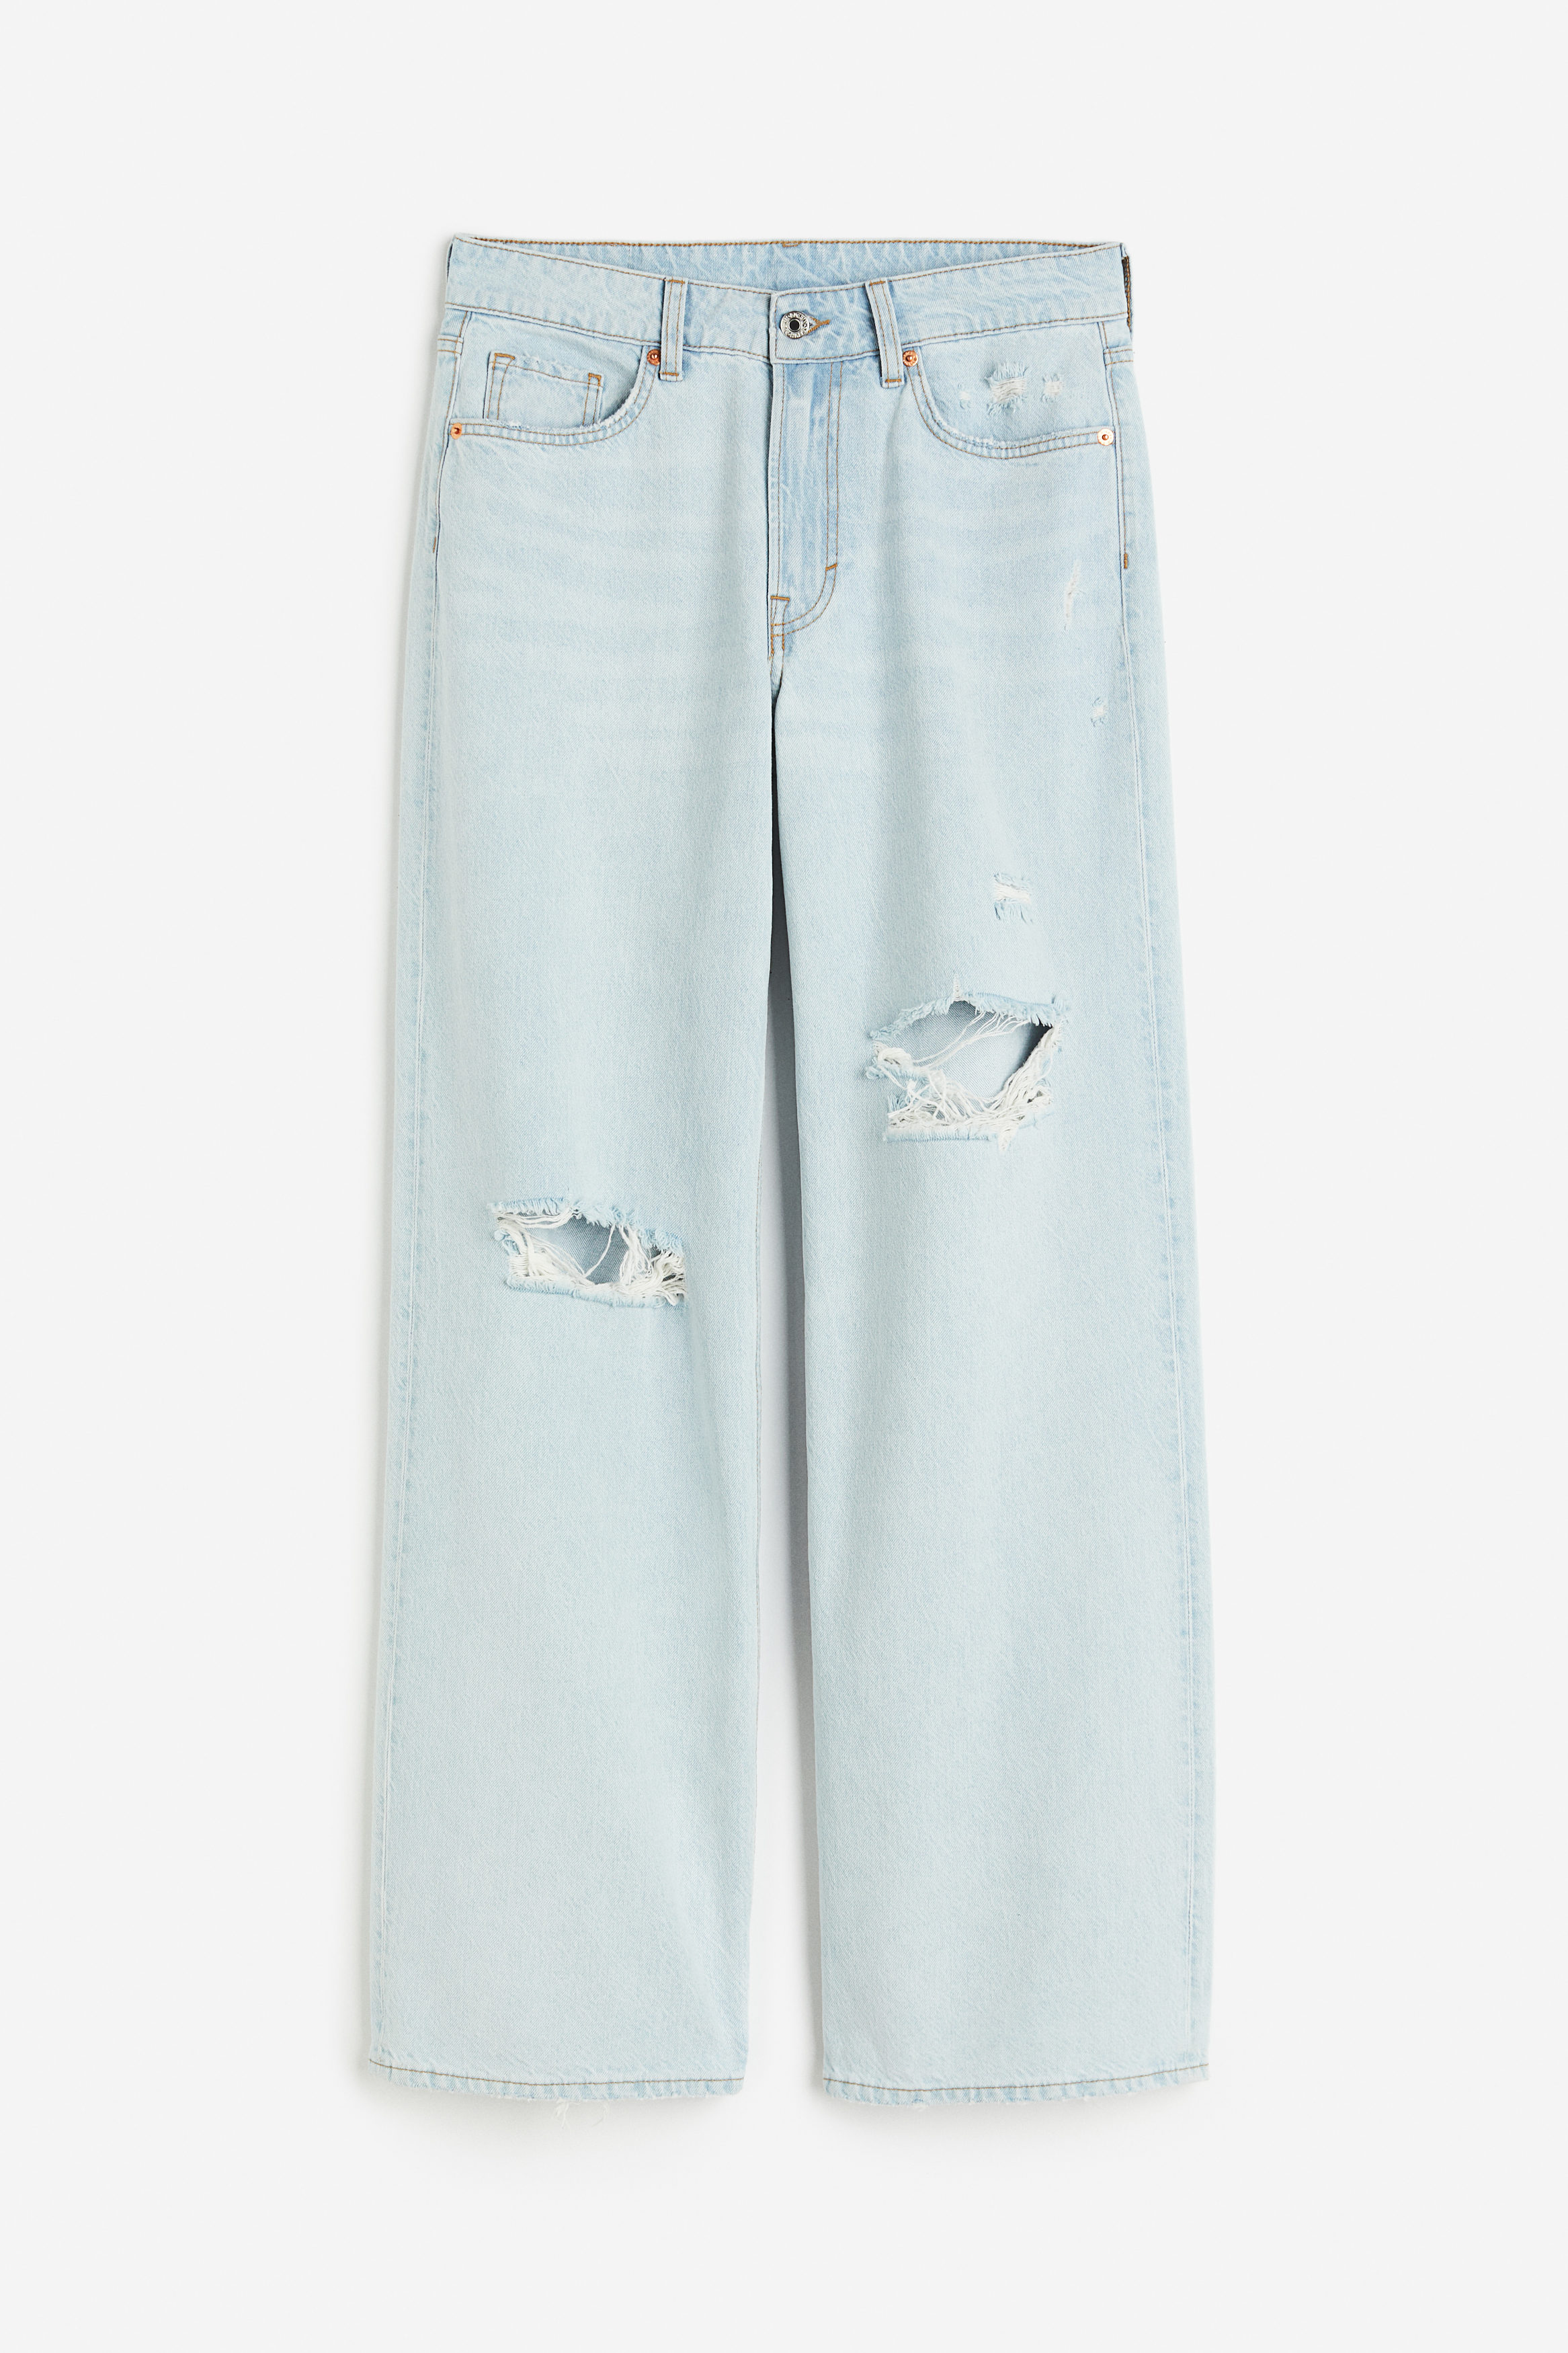 Billede af H&M Baggy Regular Jeans Sart Denimblå, Loose jeans. Farve: Pale denim blue I størrelse 36